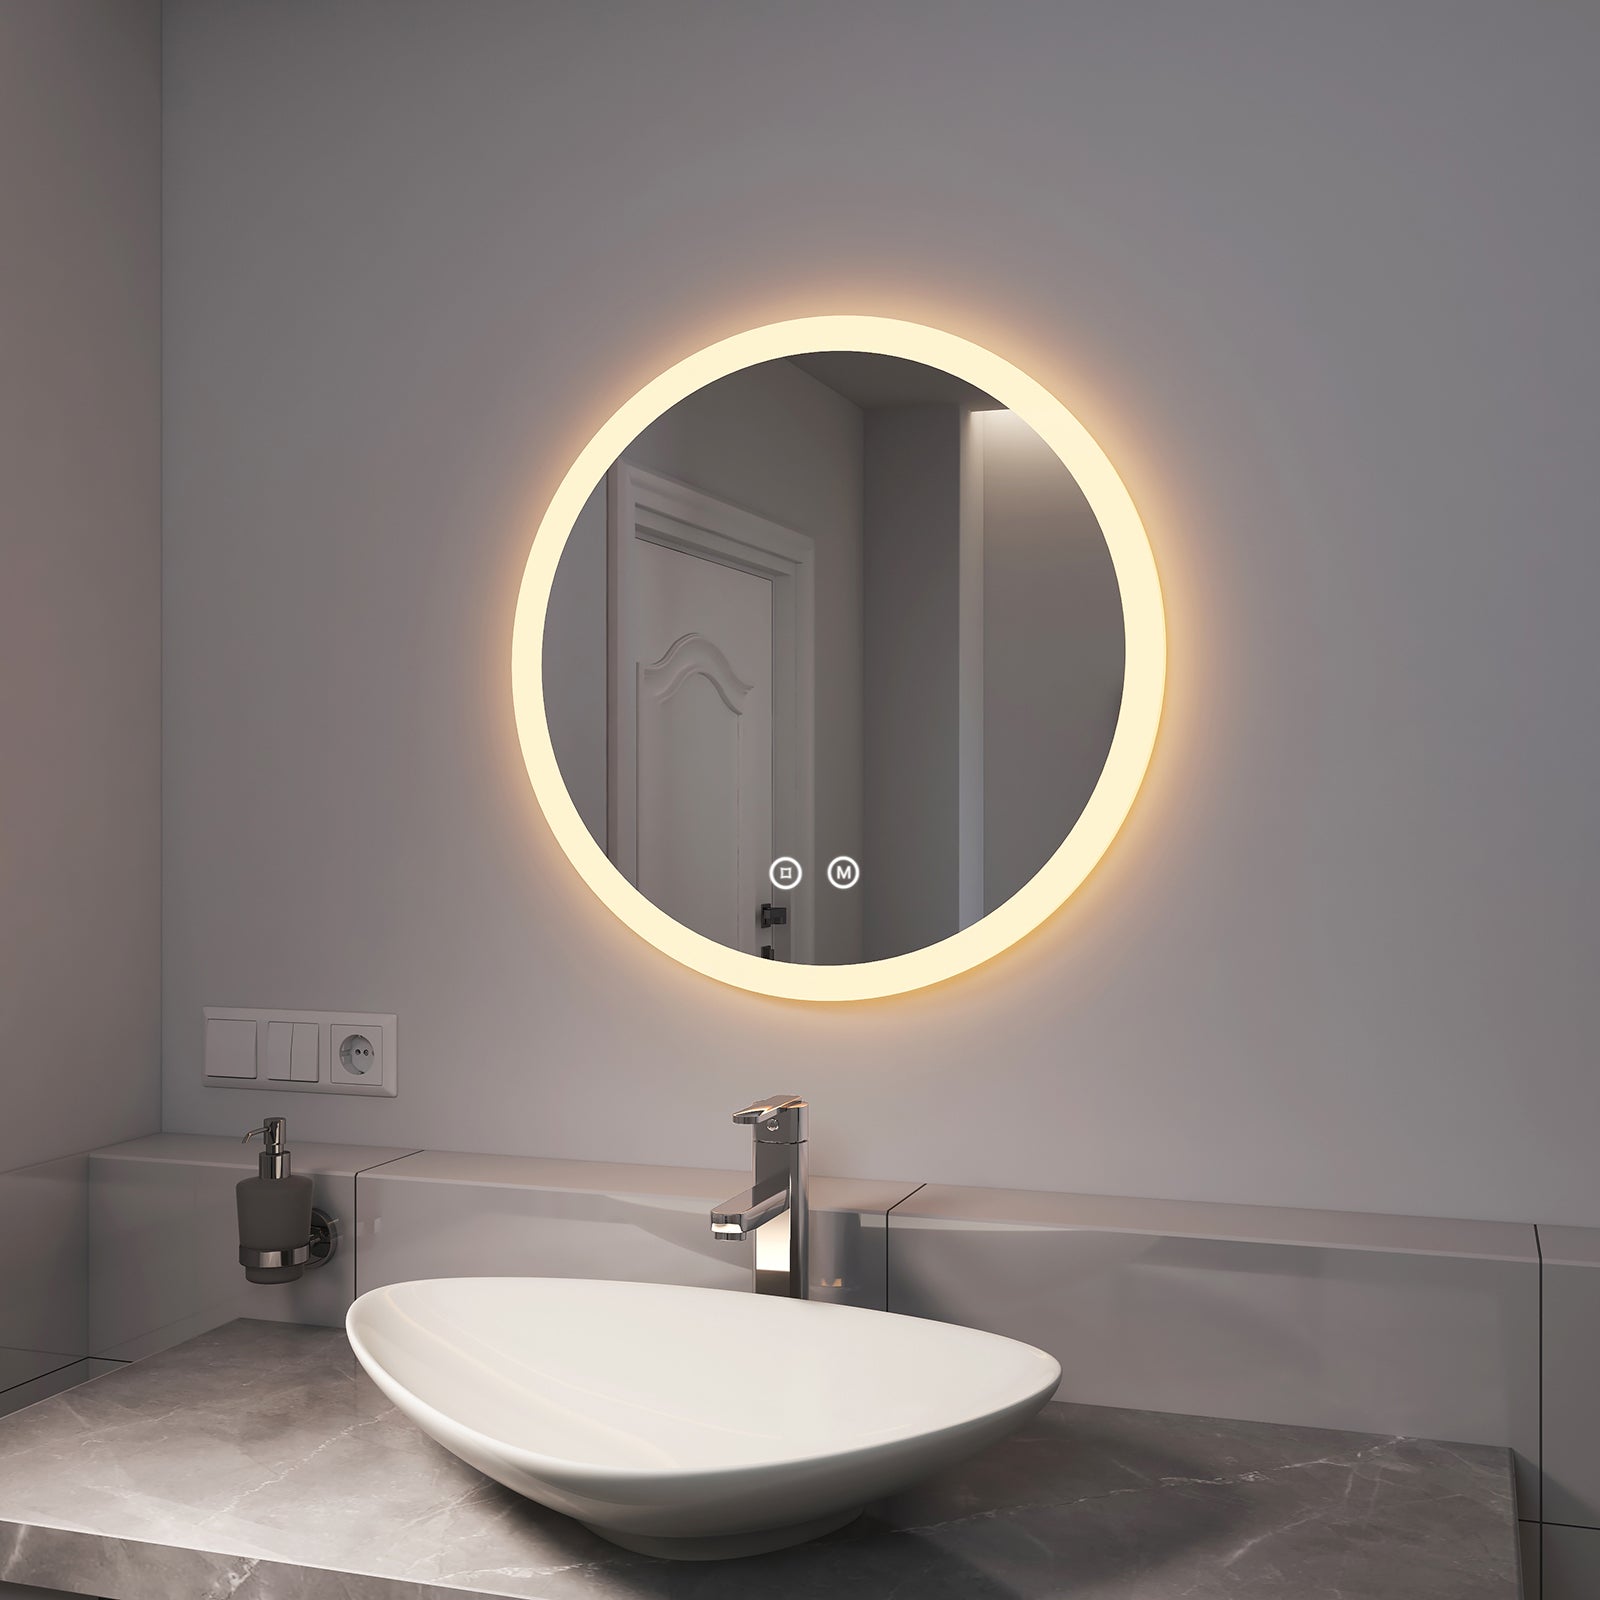 EMKE LED Spiegel Badezimmer Rund 60x60cm „LeeMi γ Pro“ mit Touch-Schalter, 3 Lichtfarben, Dimmung, Antibeschlag